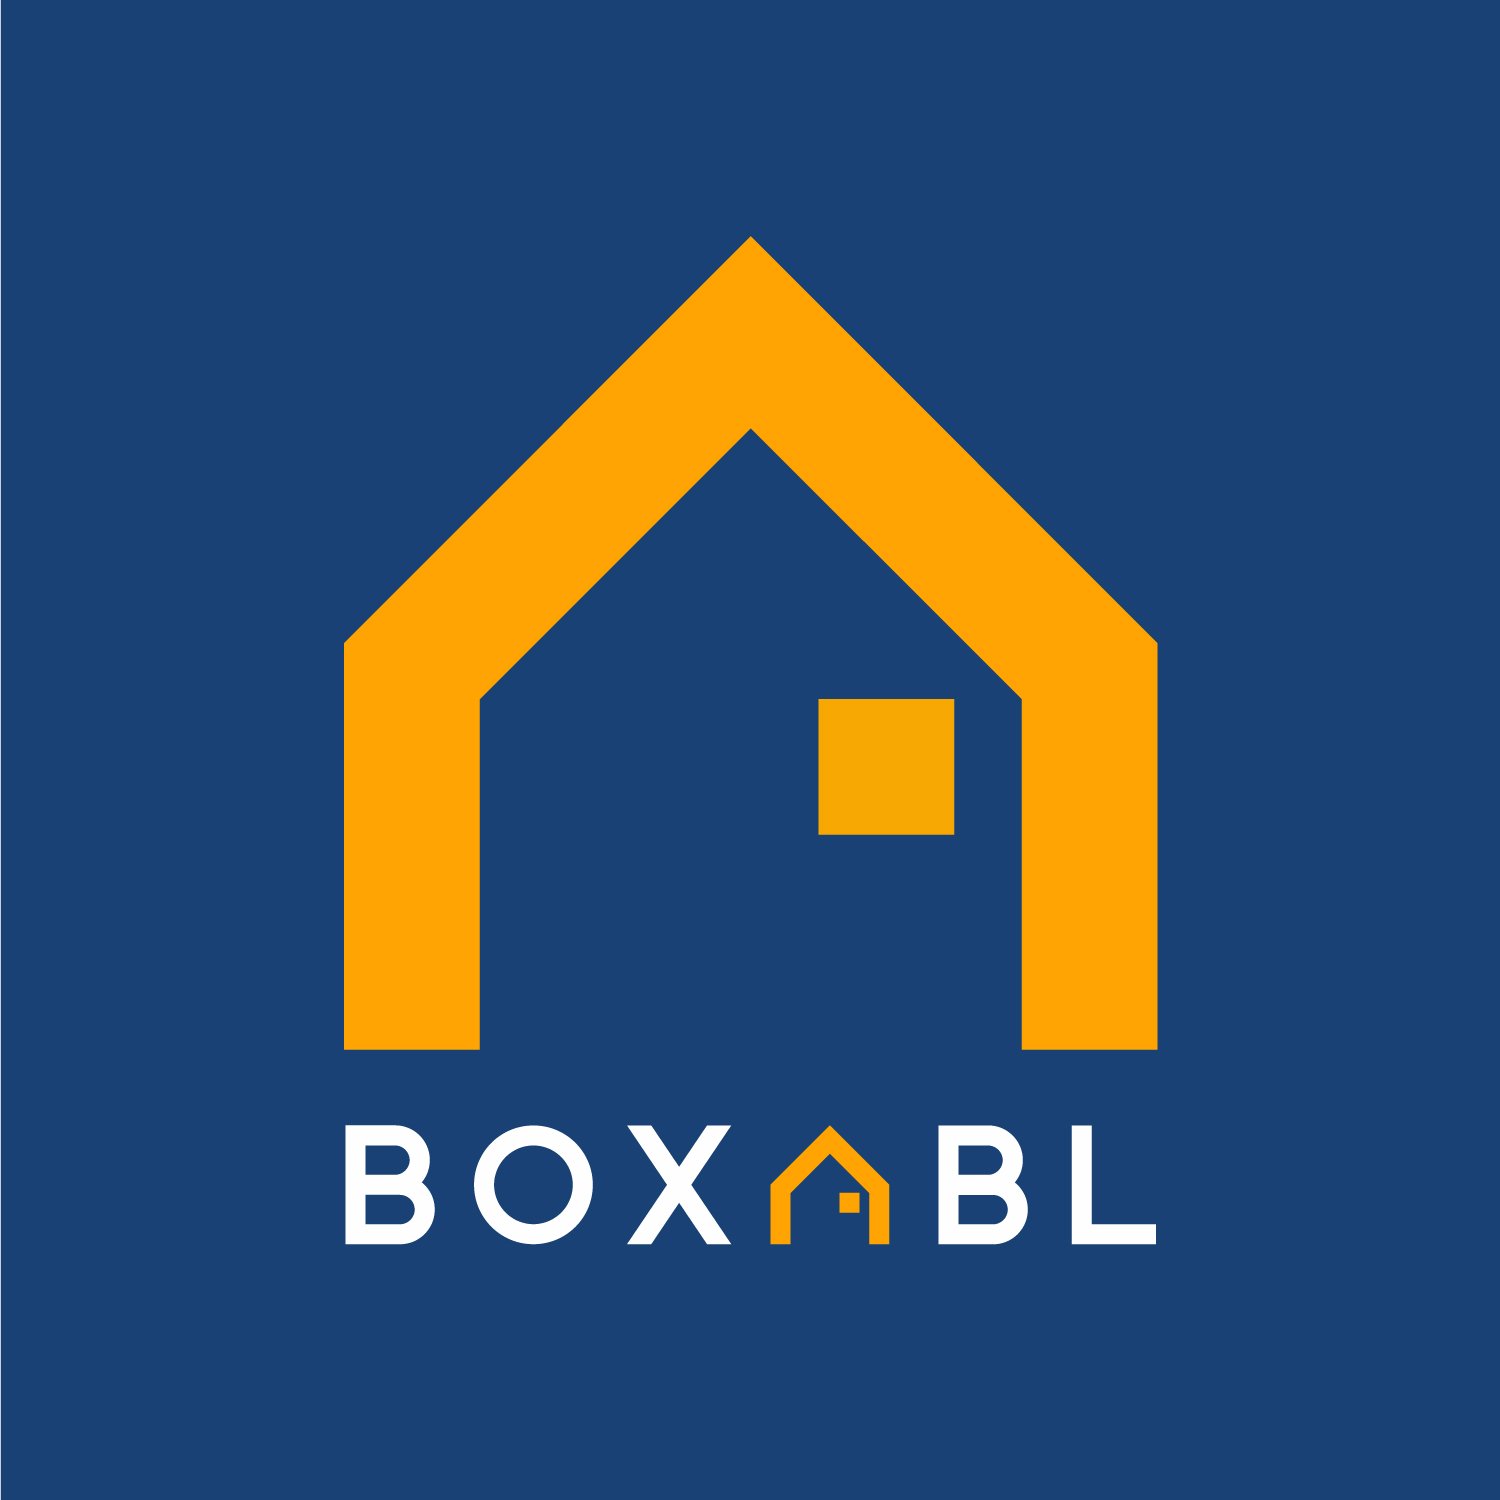 BOXABL INC. company logo